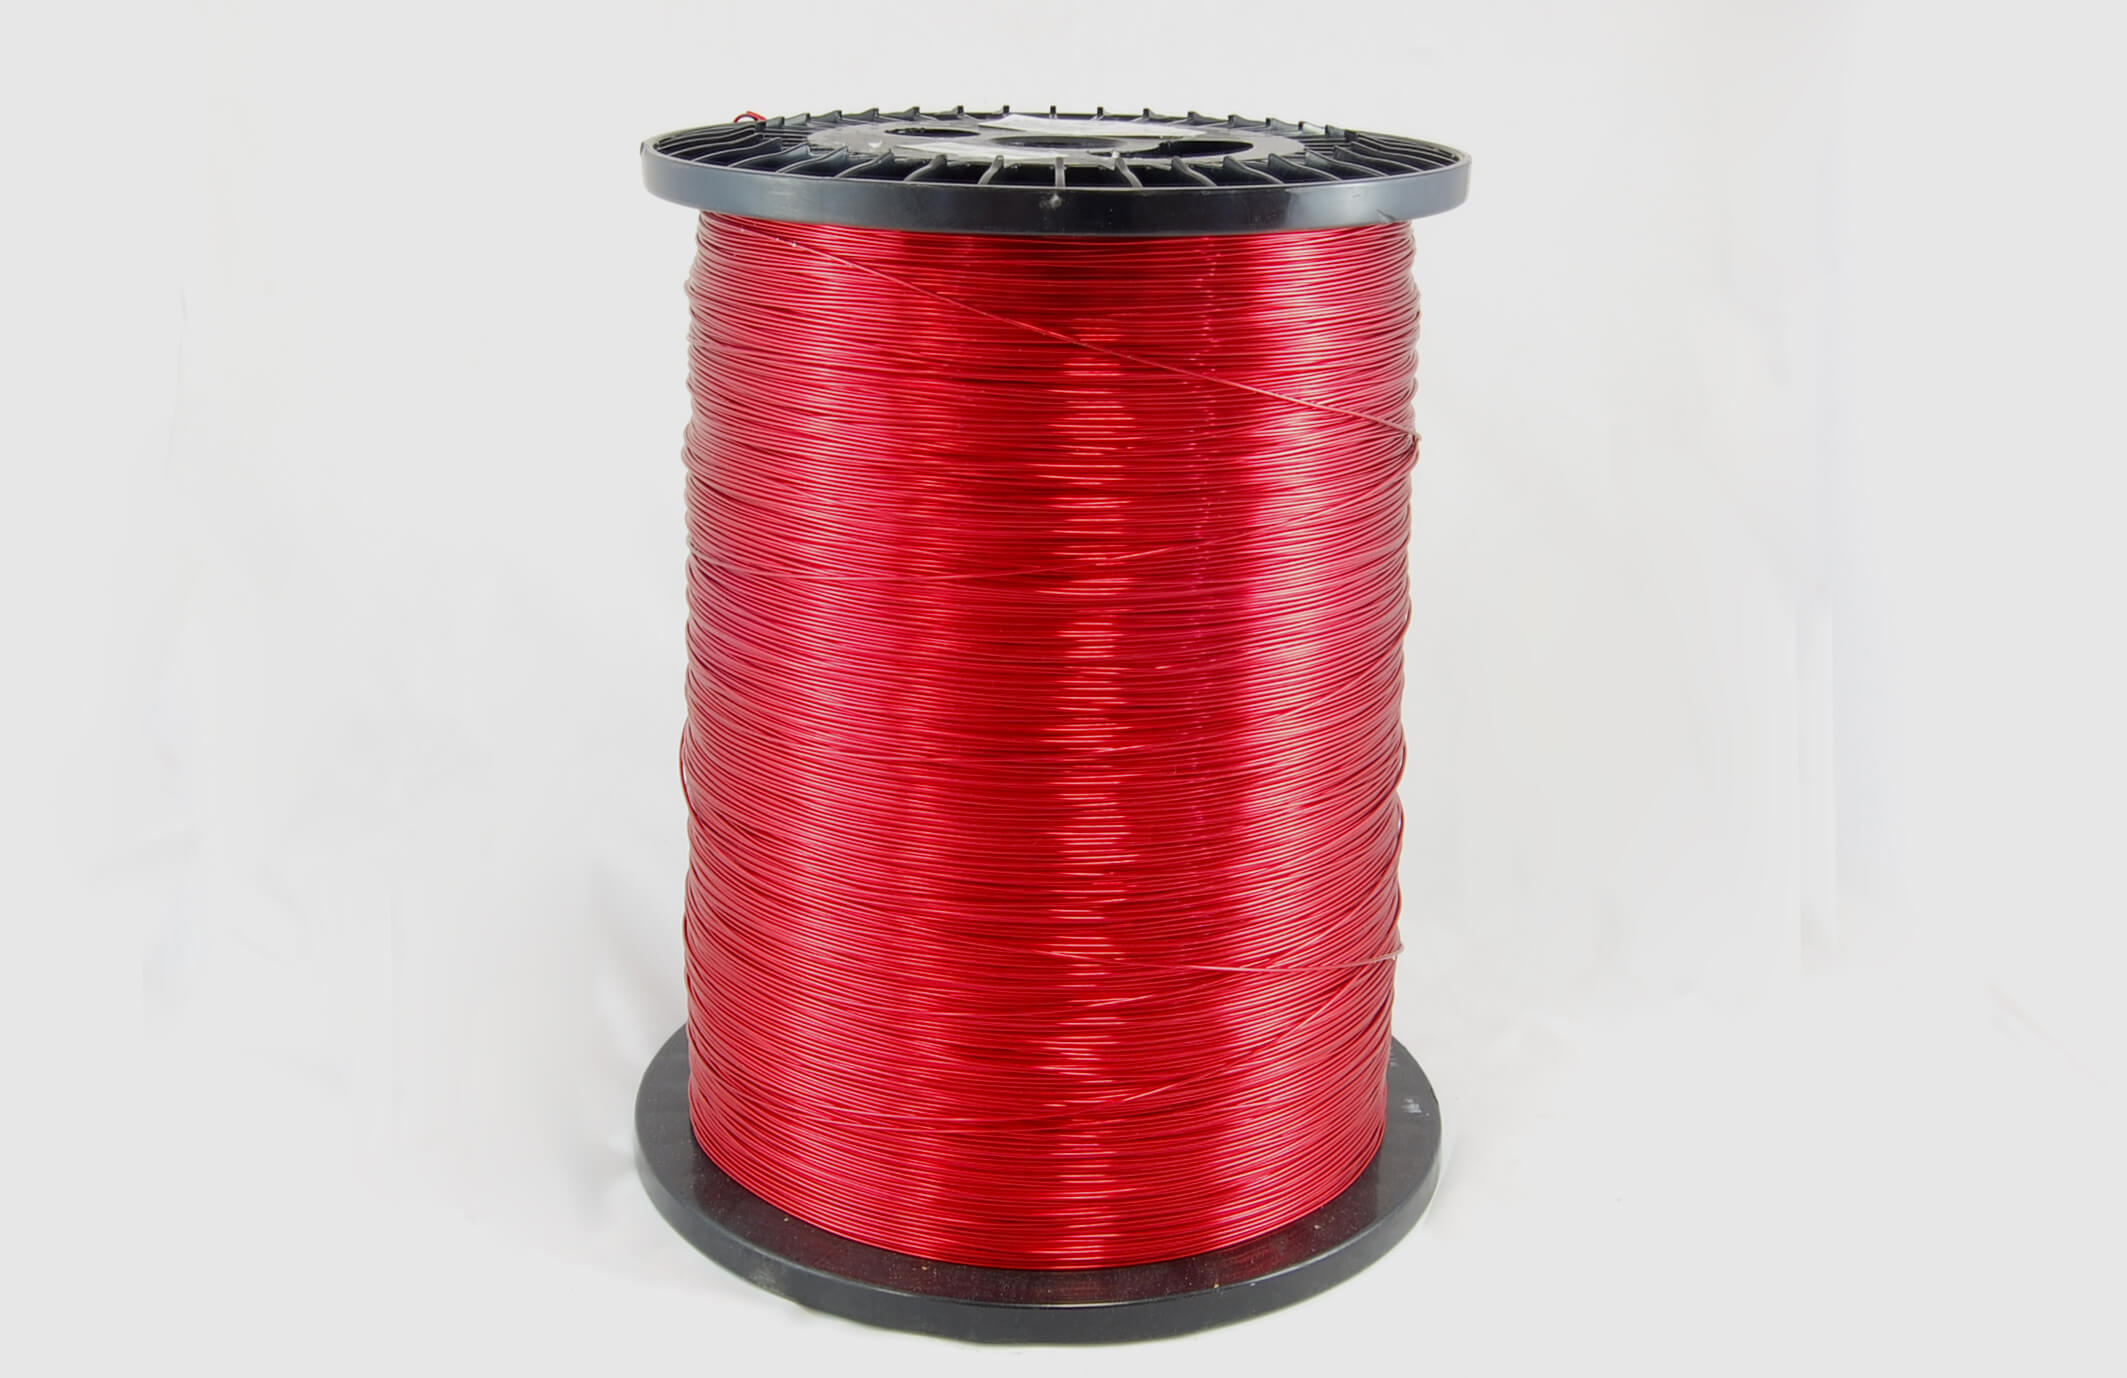 #32 Heavy Nysol  Round HNSR MW 80 Copper Magnet Wire 155°C, red, 85 LB box (average wght.)